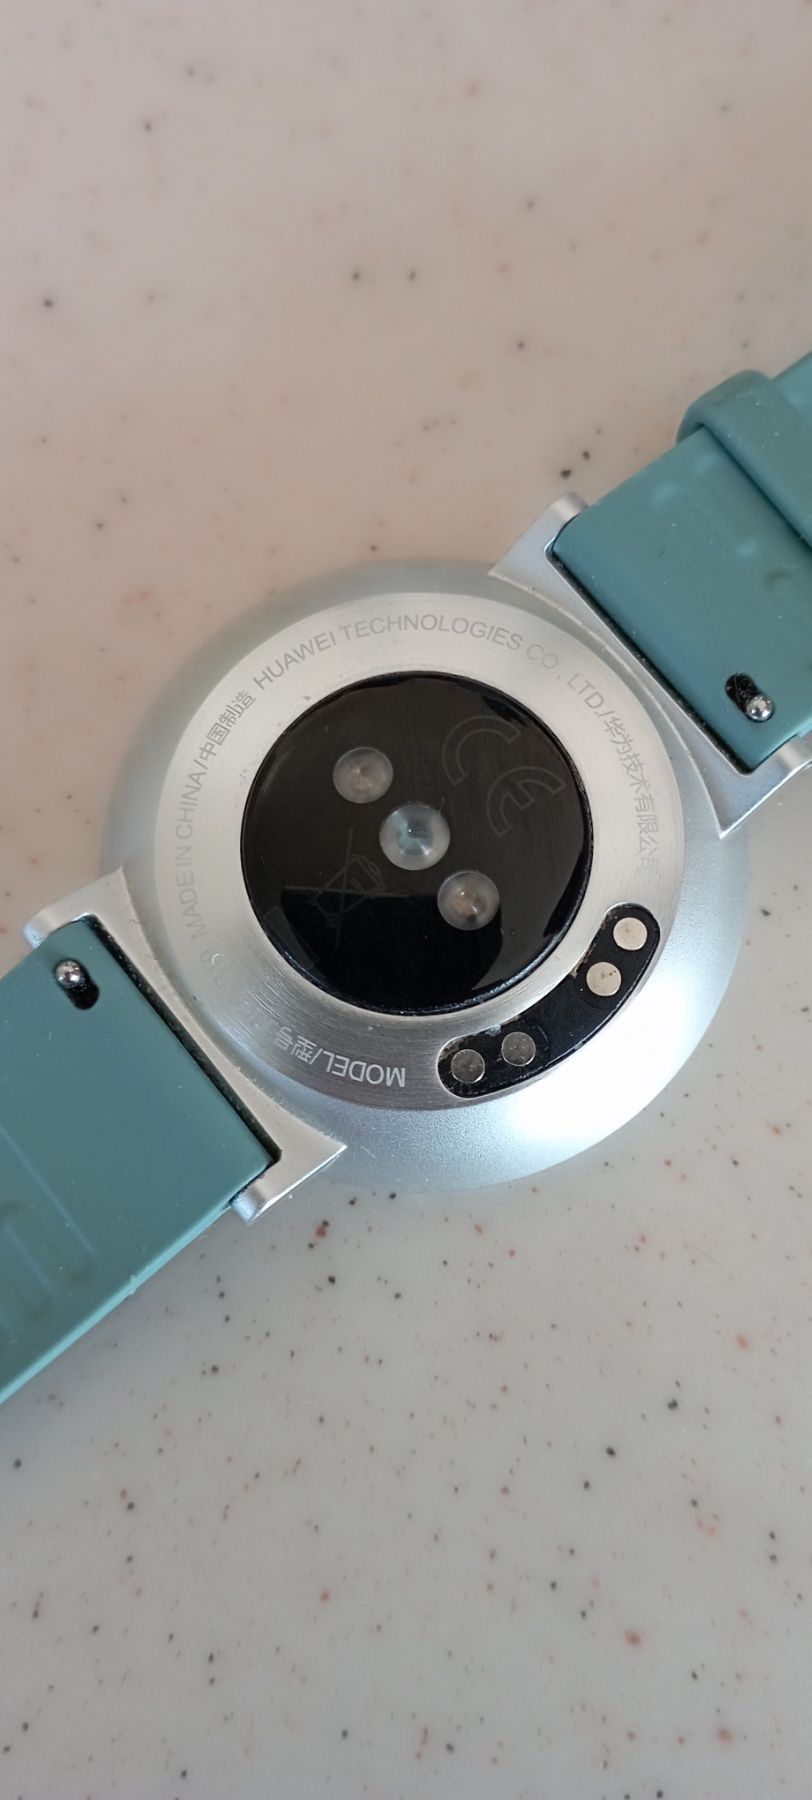 Smart watch Huawei Fit, Смарт часовник гривна, В много добро състояние